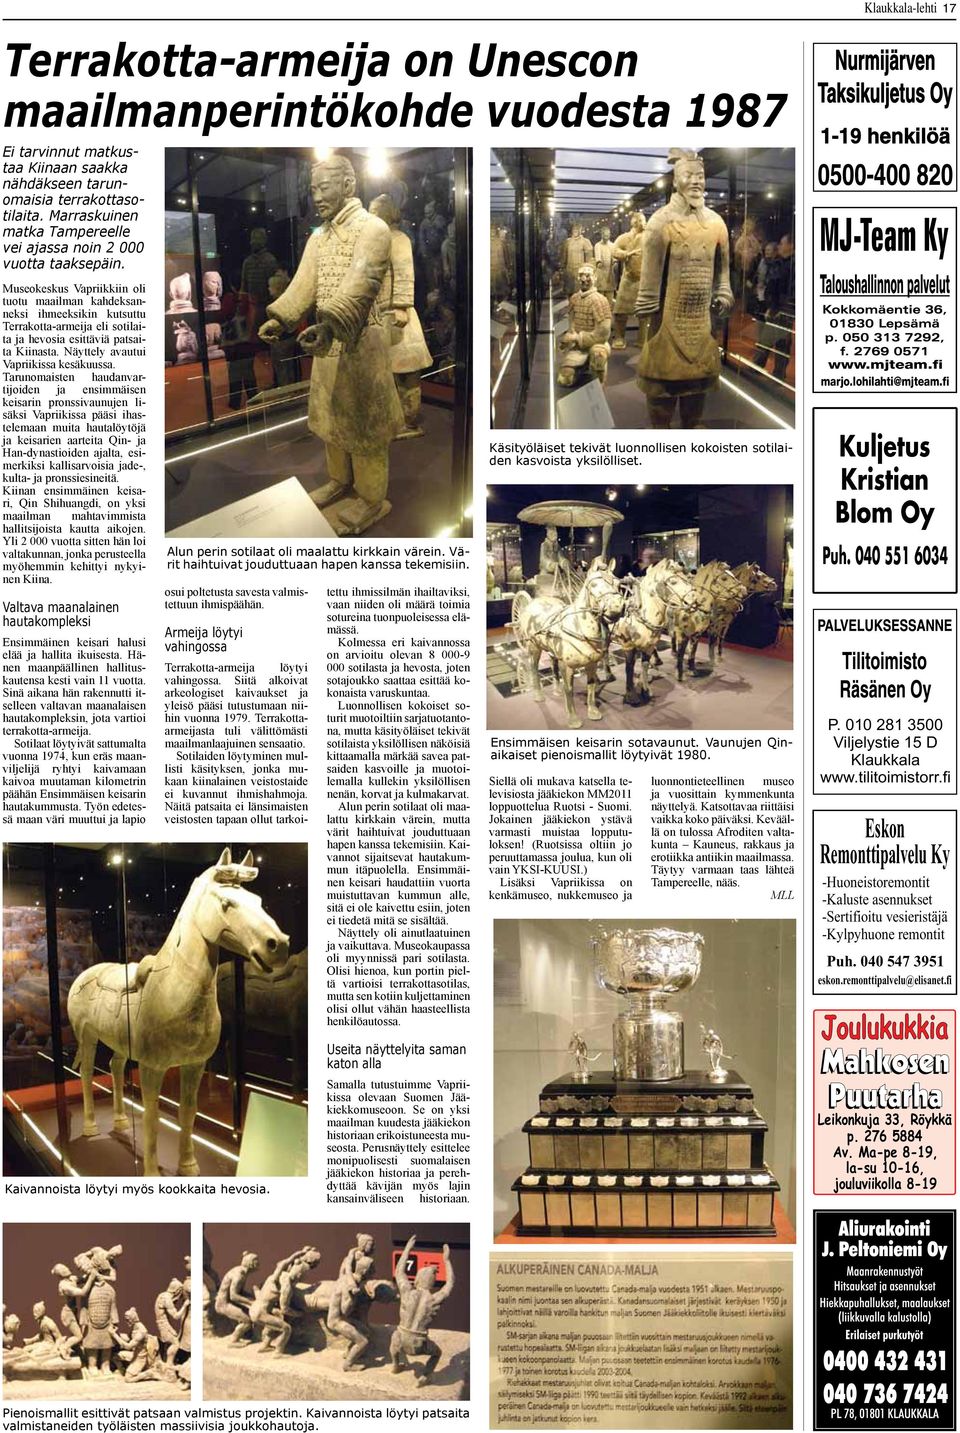 Museokeskus Vapriikkiin oli tuotu maailman kahdeksanneksi ihmeeksikin kutsuttu Terrakotta-armeija eli sotilaita ja hevosia esittäviä patsaita Kiinasta. Näyttely avautui Vapriikissa kesäkuussa.